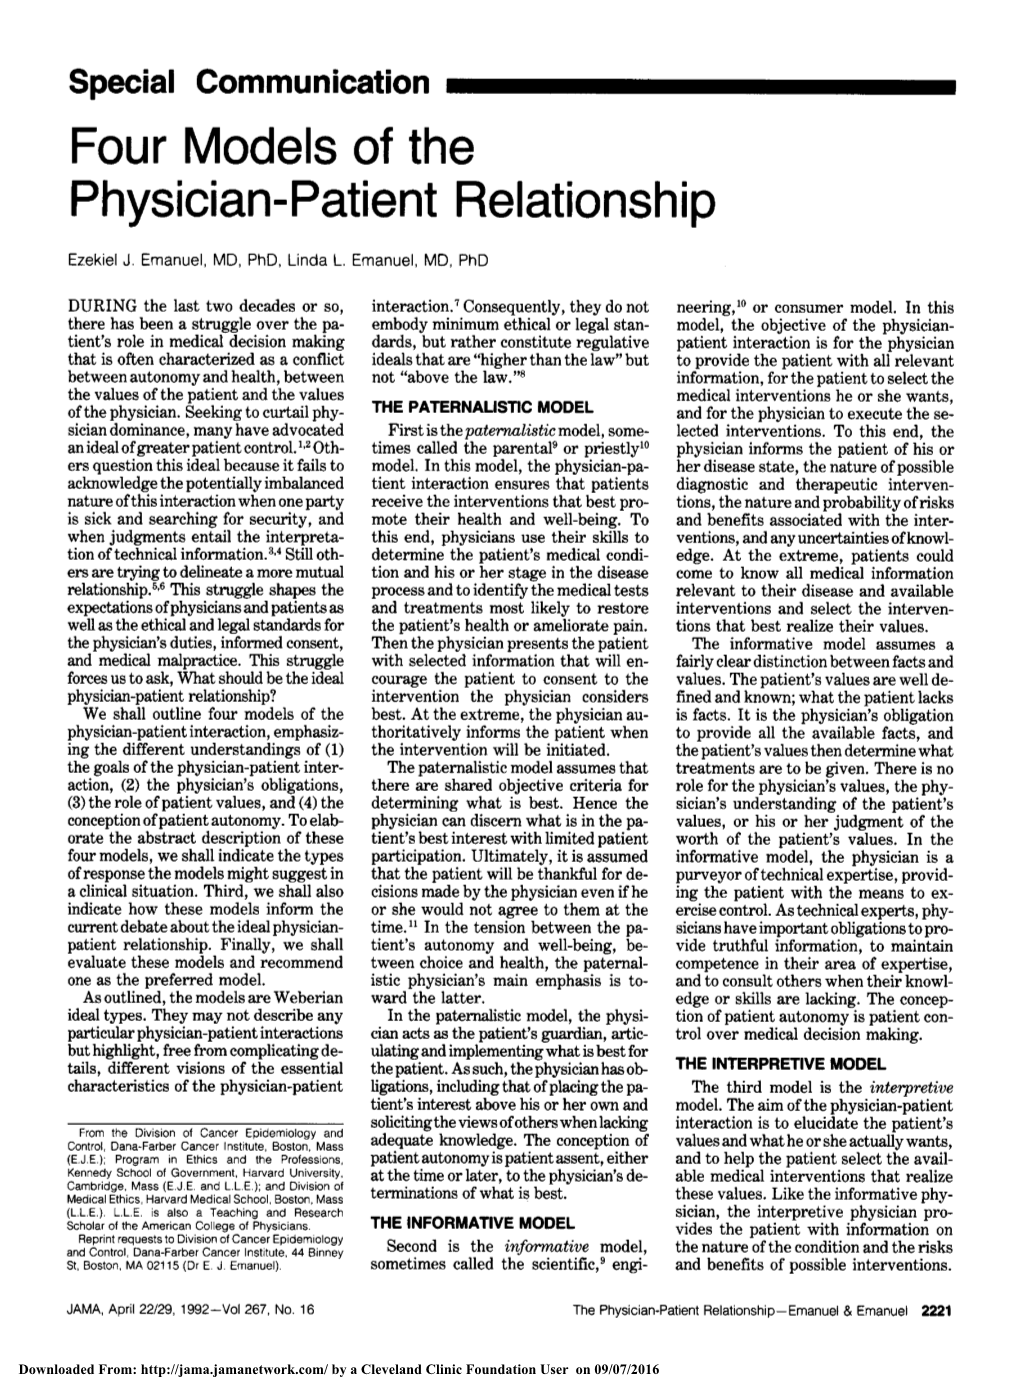 Four Models of the Physician-Patient Relationship Ezekiel J